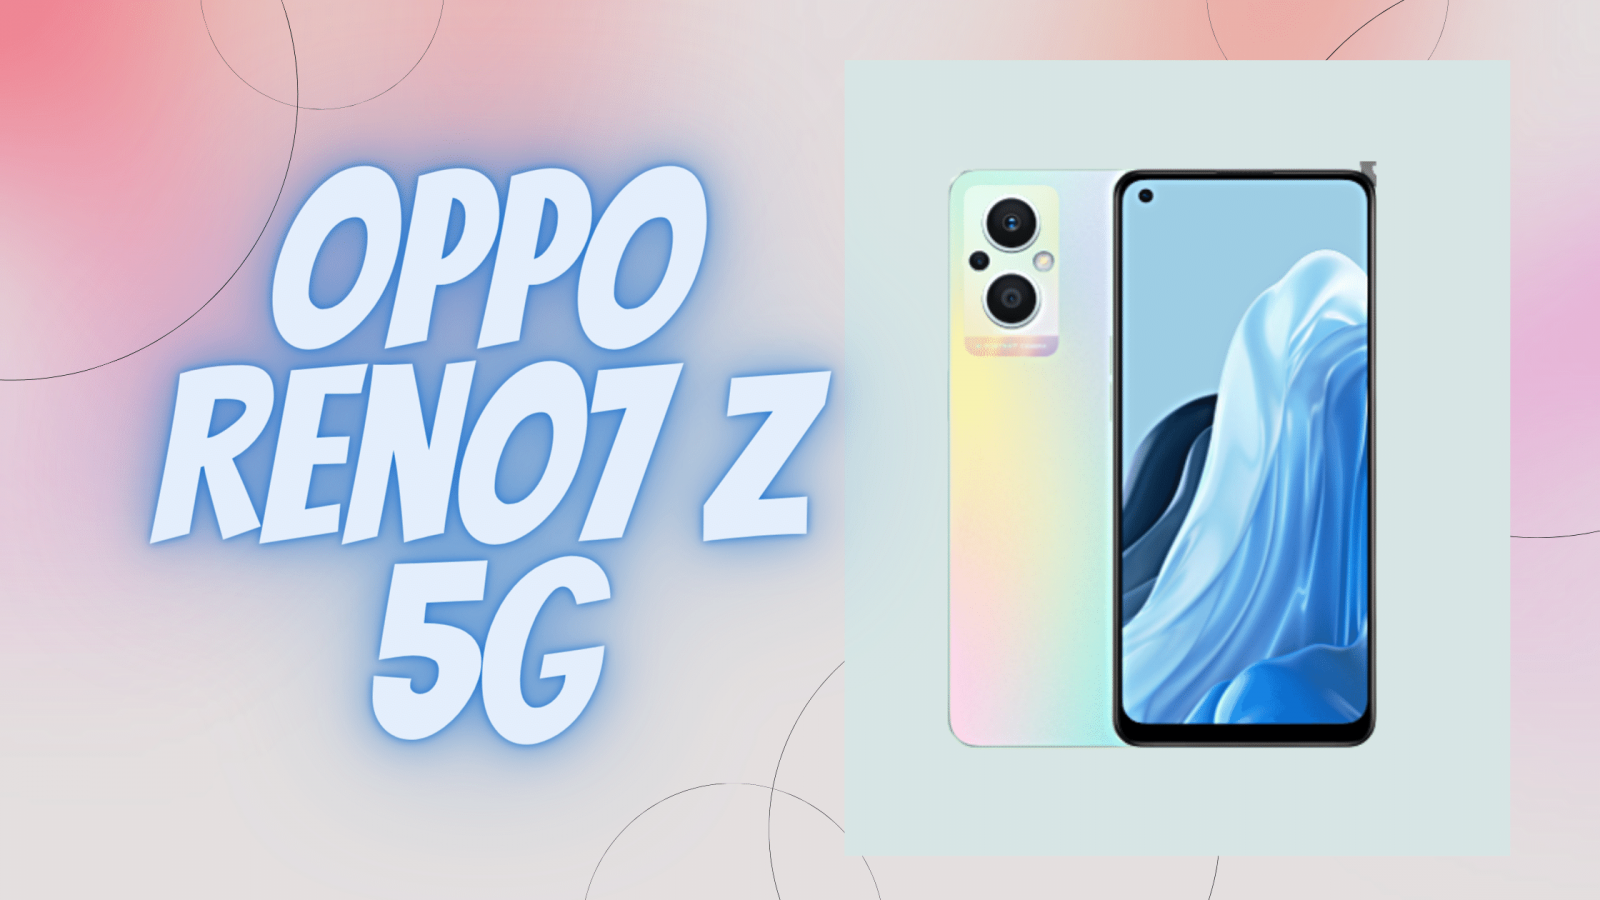 OPPO Reno7 Z 5G ra mắt với ra mắt với hàng loạt ưu điểm